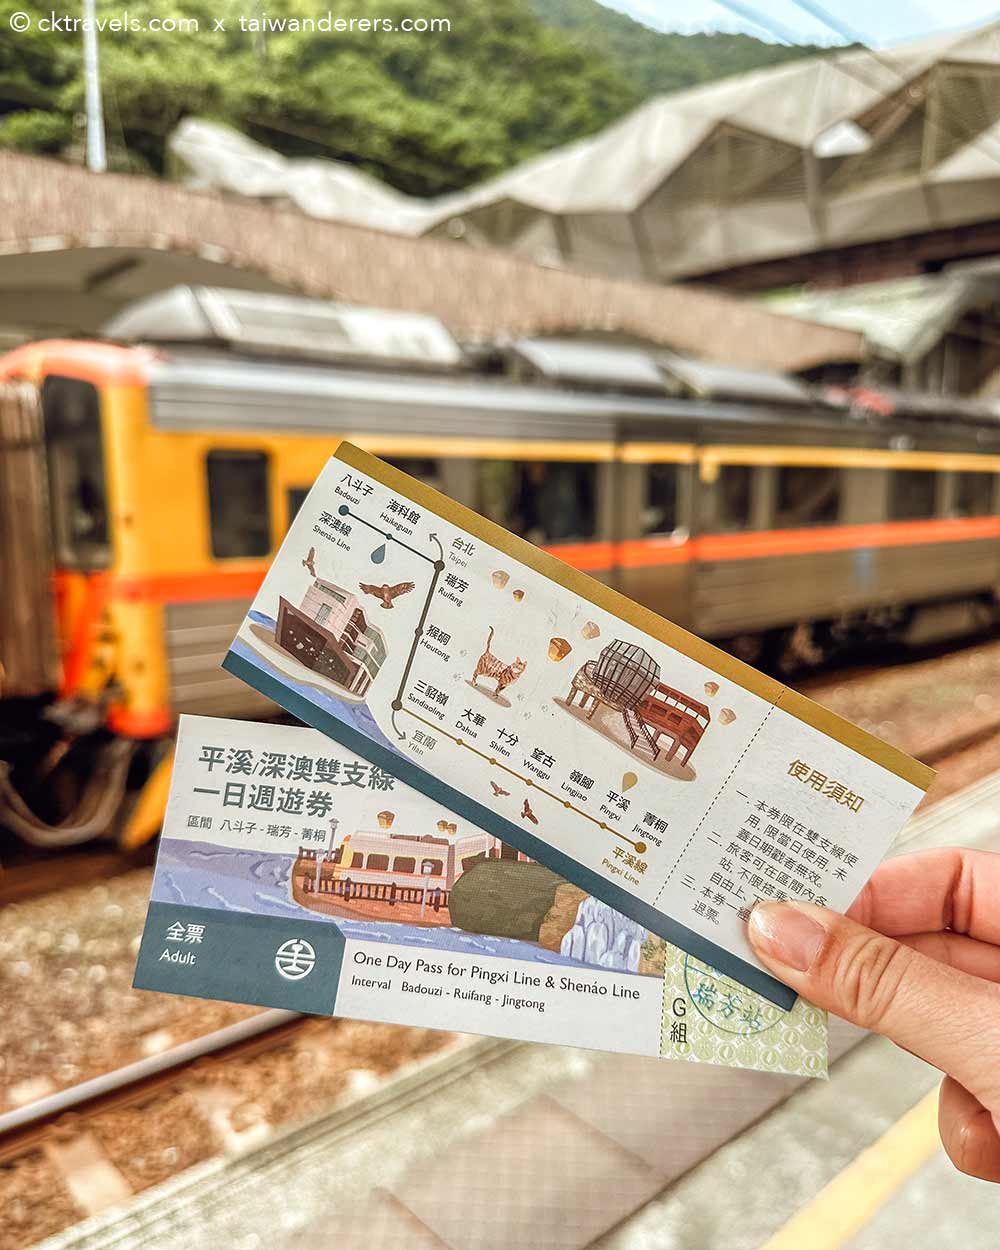 Pingxi Line train pass tickets Taiwan